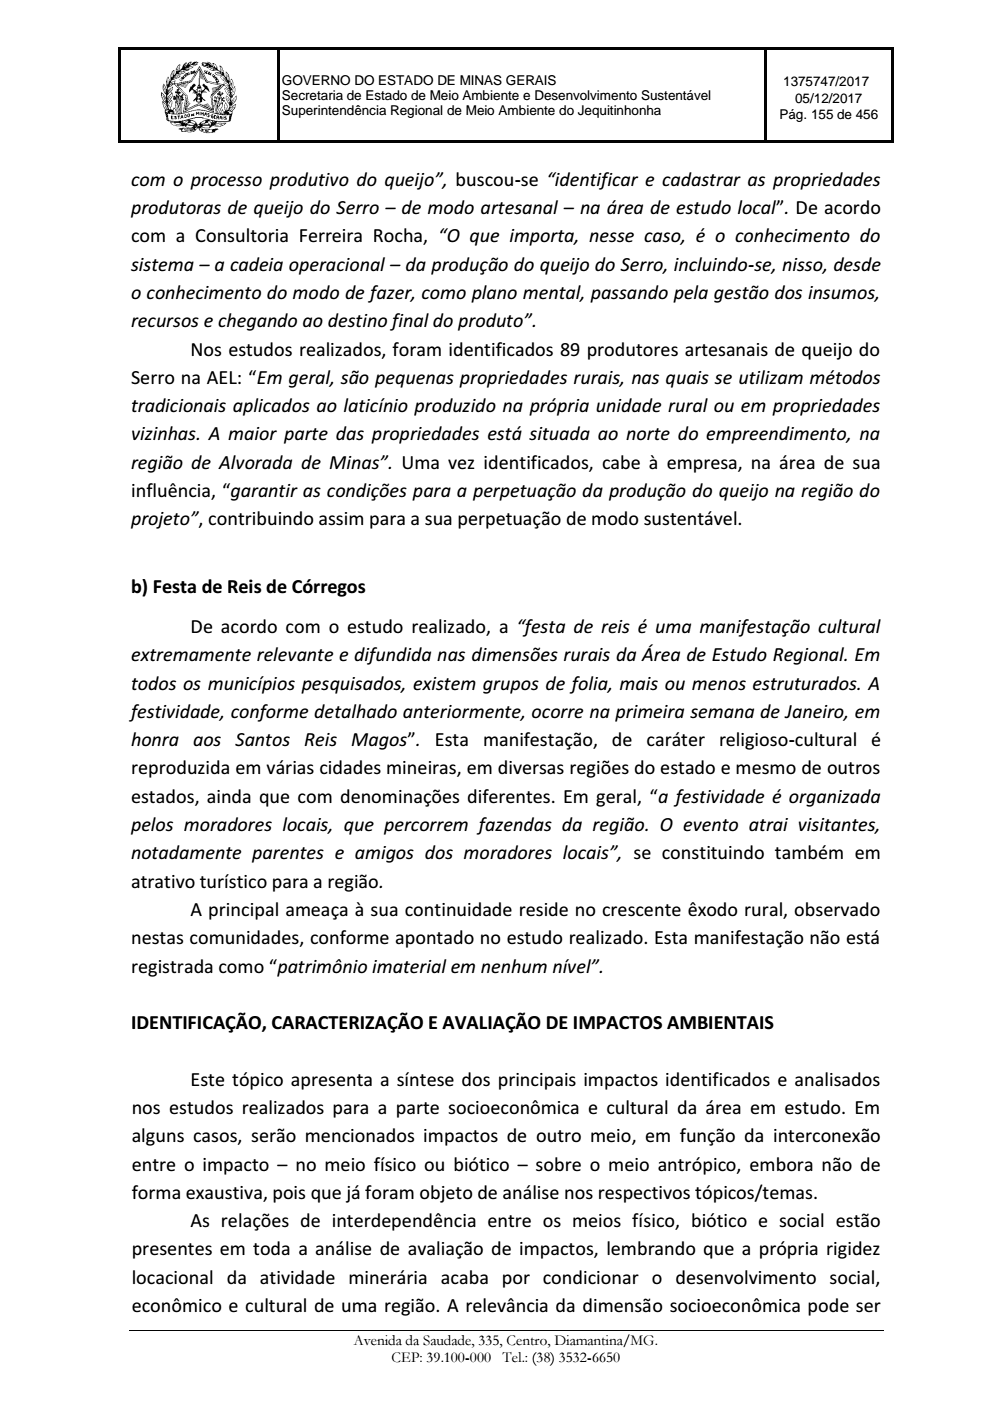 Page 155 from Parecer único da Secretaria de estado de Meio Ambiente e Desenvolvimento Sustentável (SEMAD)